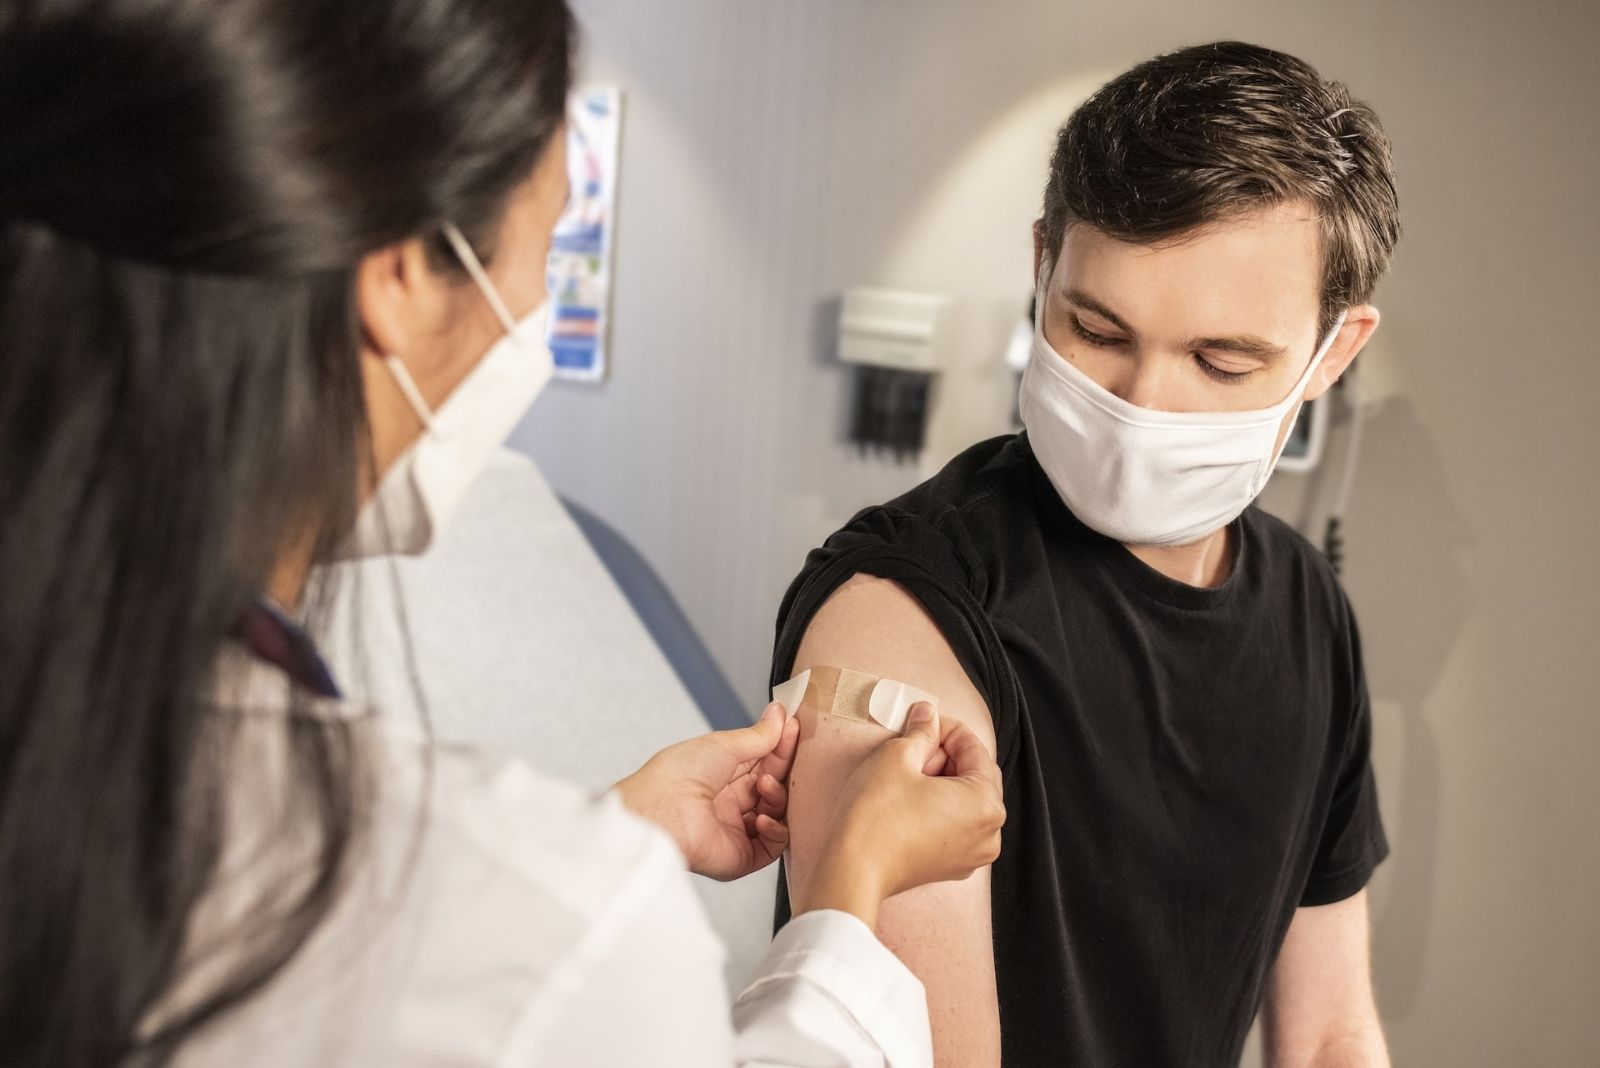 Patient taking vaccine